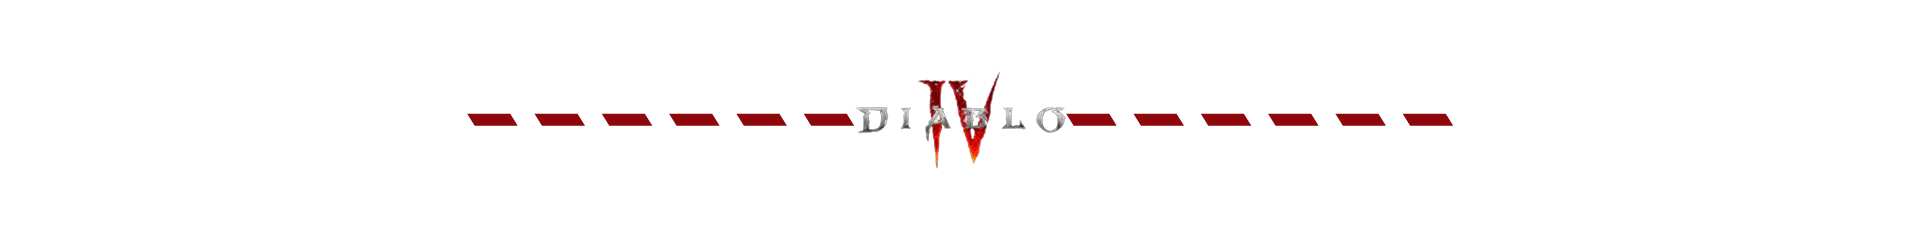 Diablo IV Separador.png